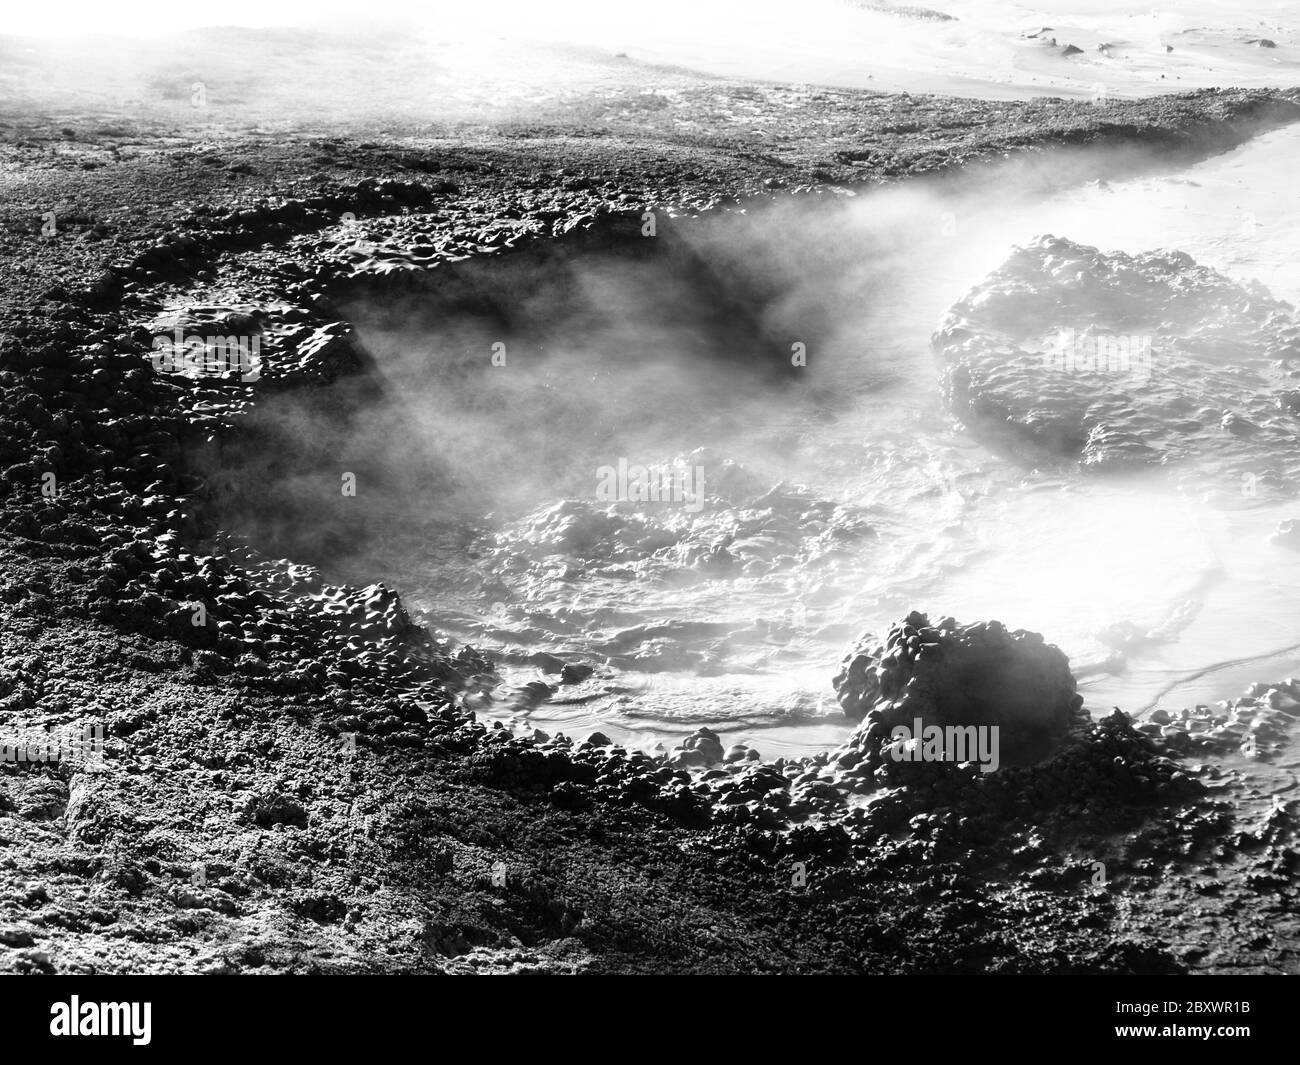 Vapore che fuoriesce dal fango e illuminato dai raggi solari, Sol de Manana, Altiplano, Bolivia, immagine in bianco e nero Foto Stock